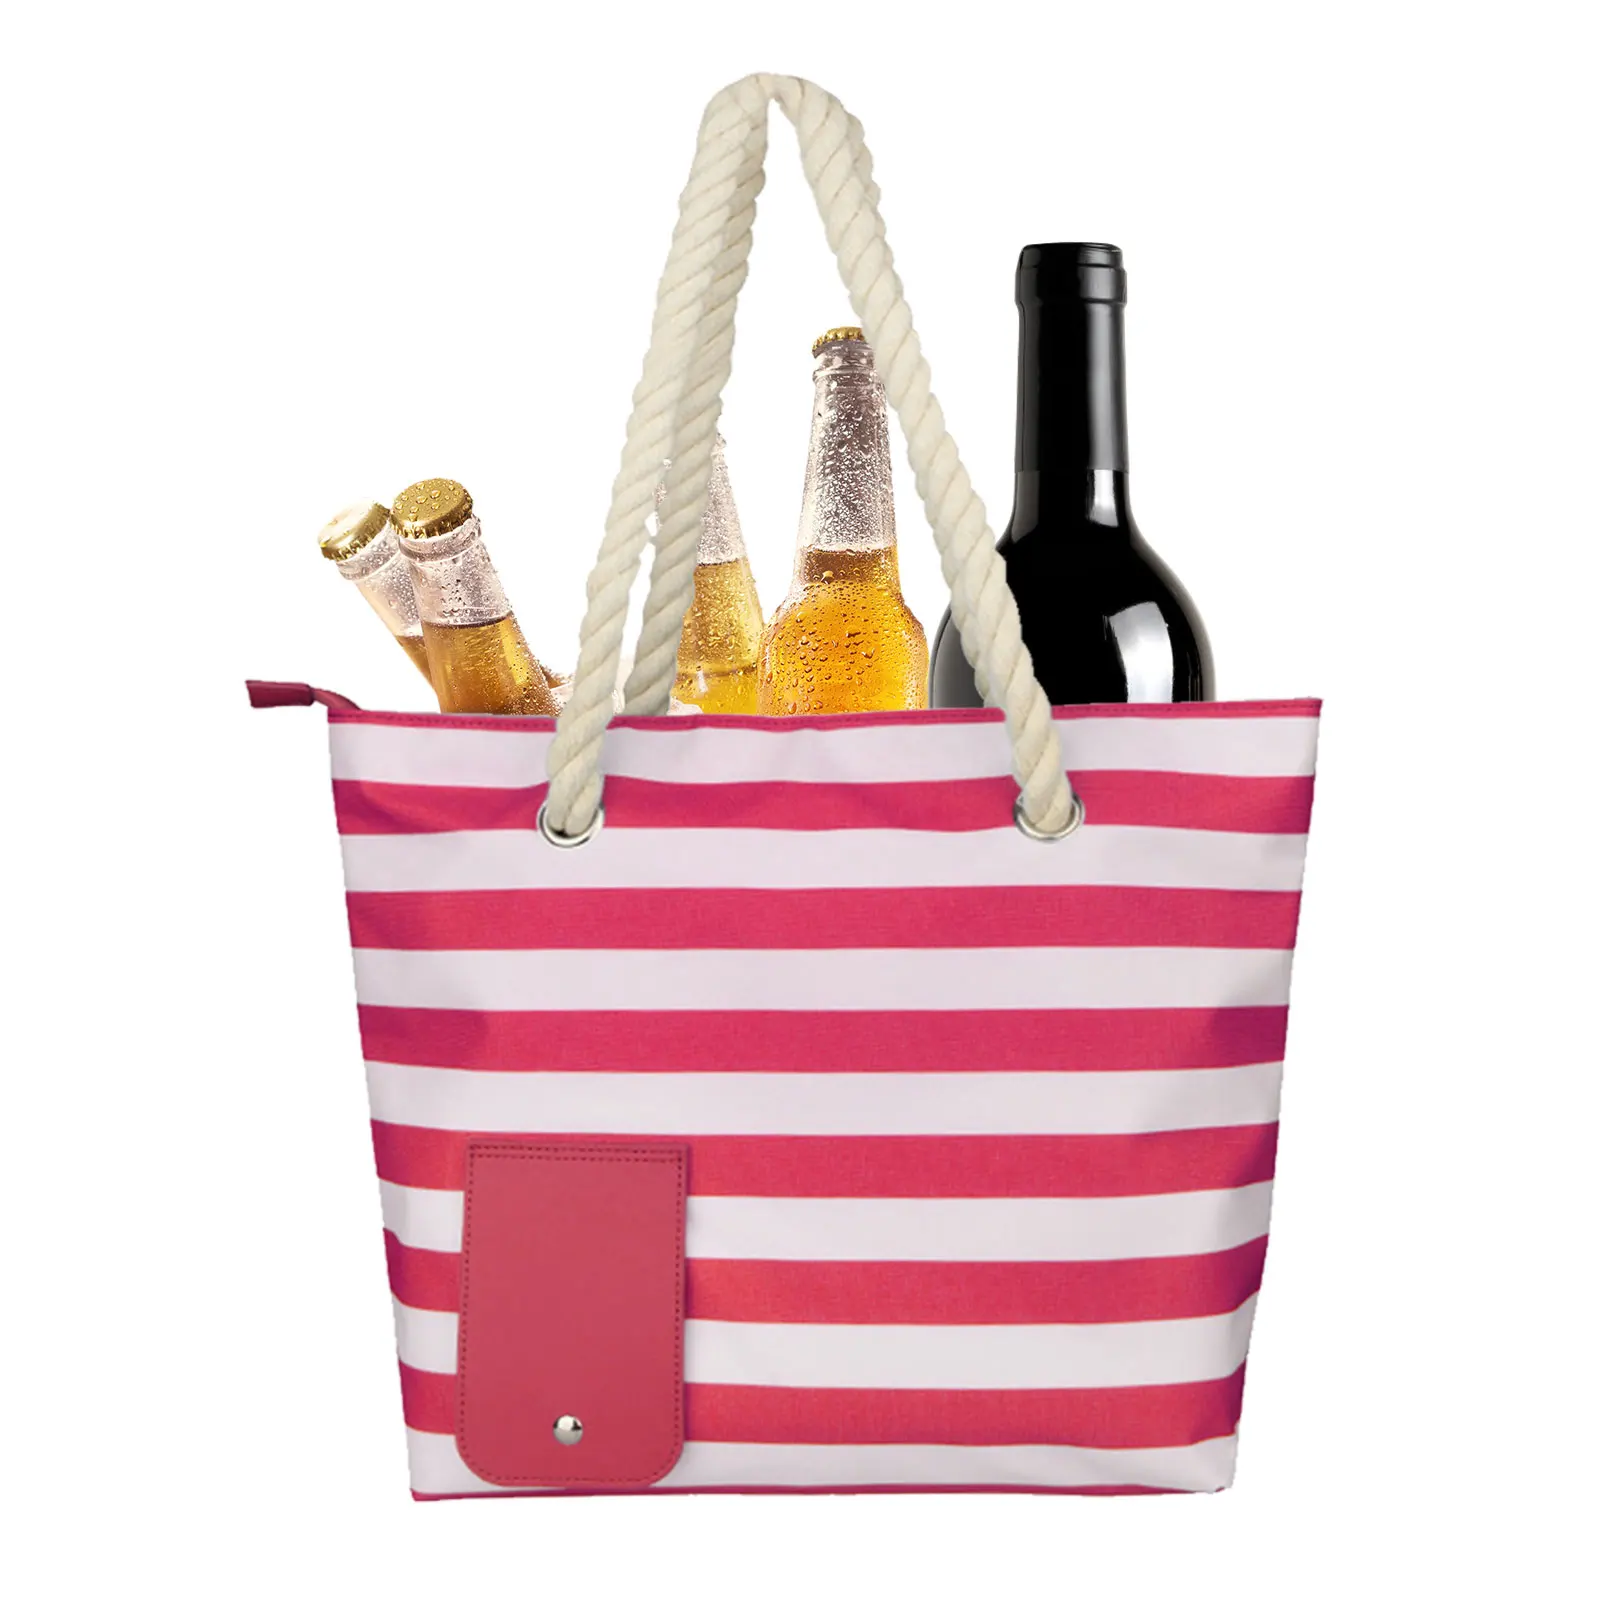 

Пляжный винный кошелек/сумка-тоут с винным мешочком, сумка для вина с мягким термоотделением и носиком для напитков, вместительная сумка-то...